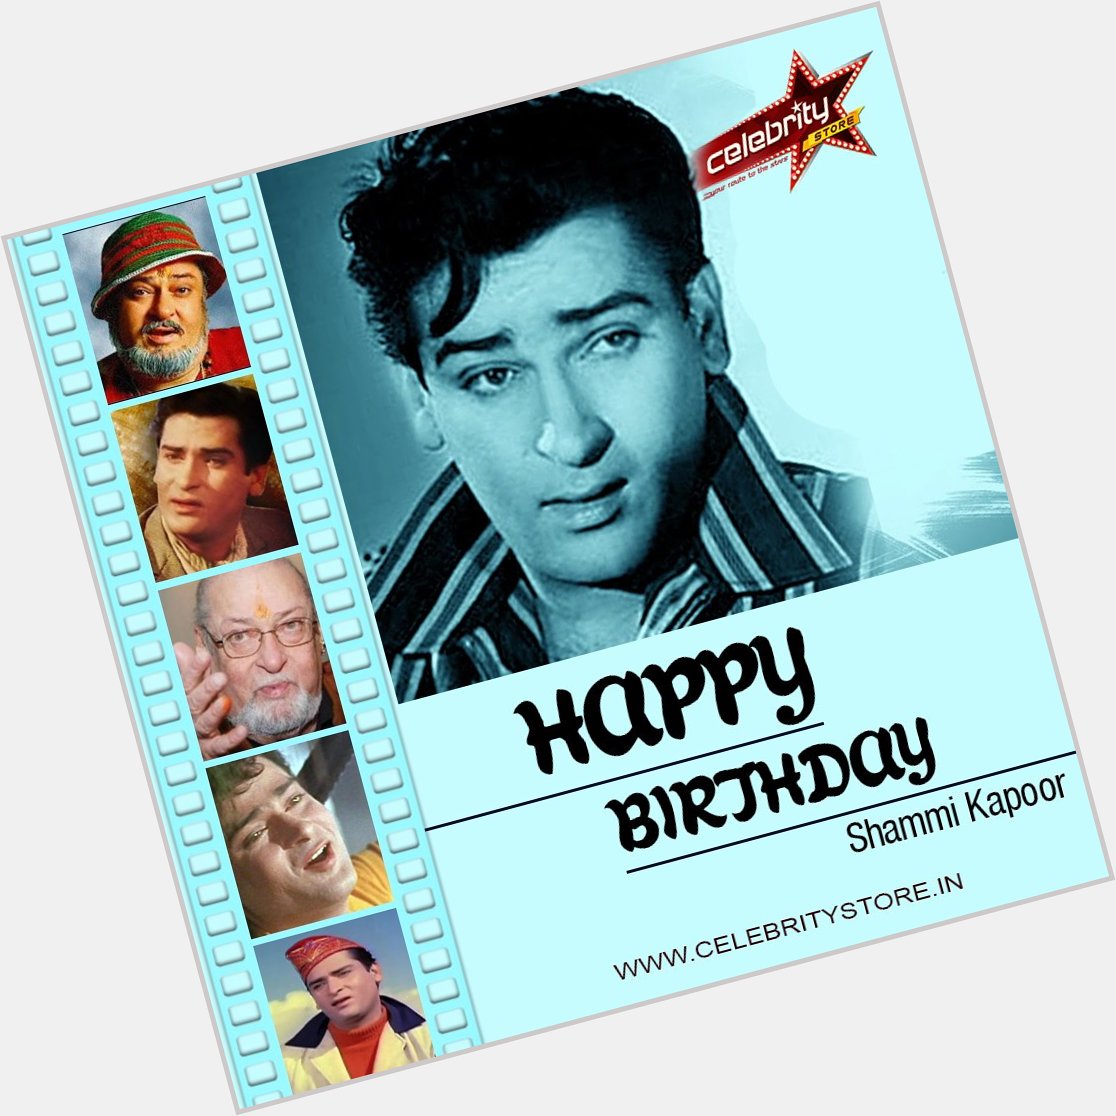  Wishes the of - Shammi Kapoor ji a Very Happy Birthday 